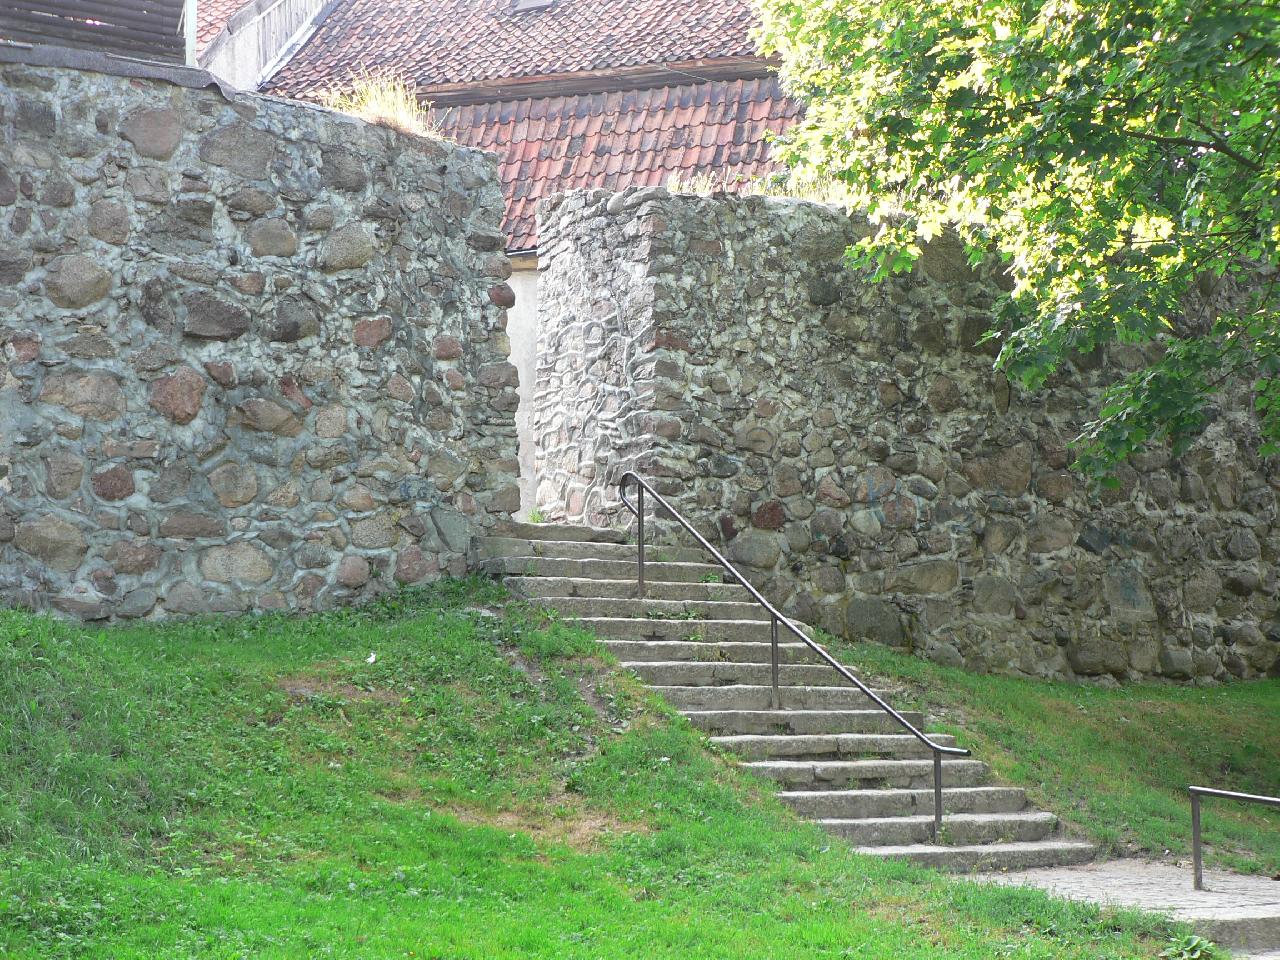 Schody prowadzące do wejścia przez mury obronne z innej perspektywy